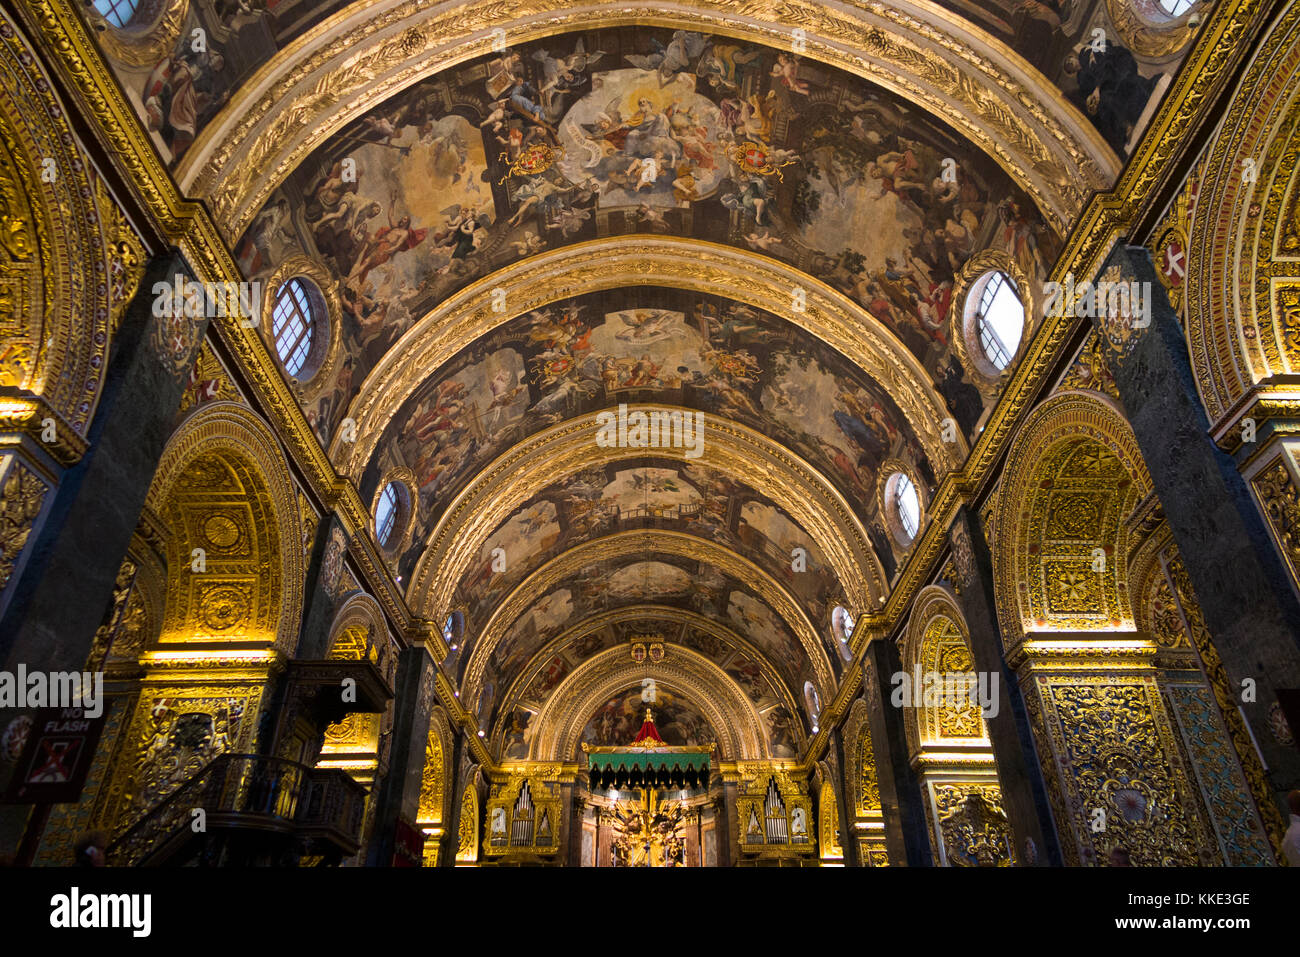 Barock & Hoch dekorierte Decke (Altar & Altar Vordach im Abstand) innerhalb des Kirchenschiffs/innen innerhalb der St John's Co-Cathedral. Valletta, Malta Stockfoto